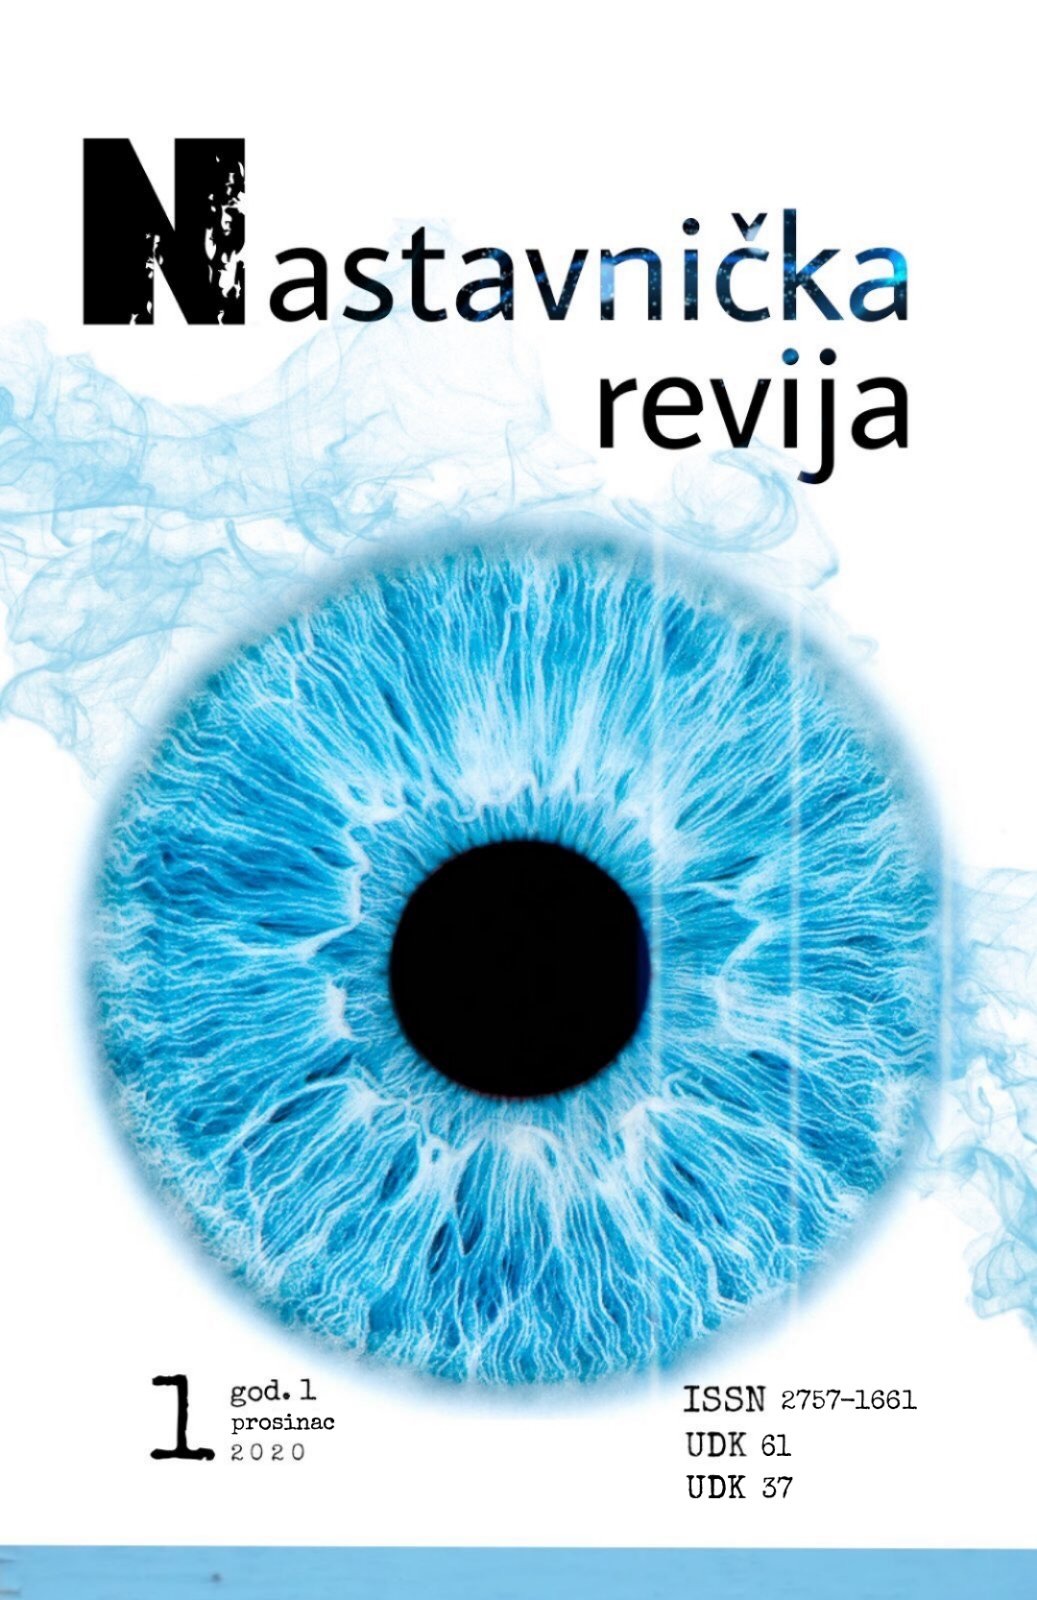 logo Nastavnička revija : Stručni časopis Škole za medicinske sestre Vinogradska